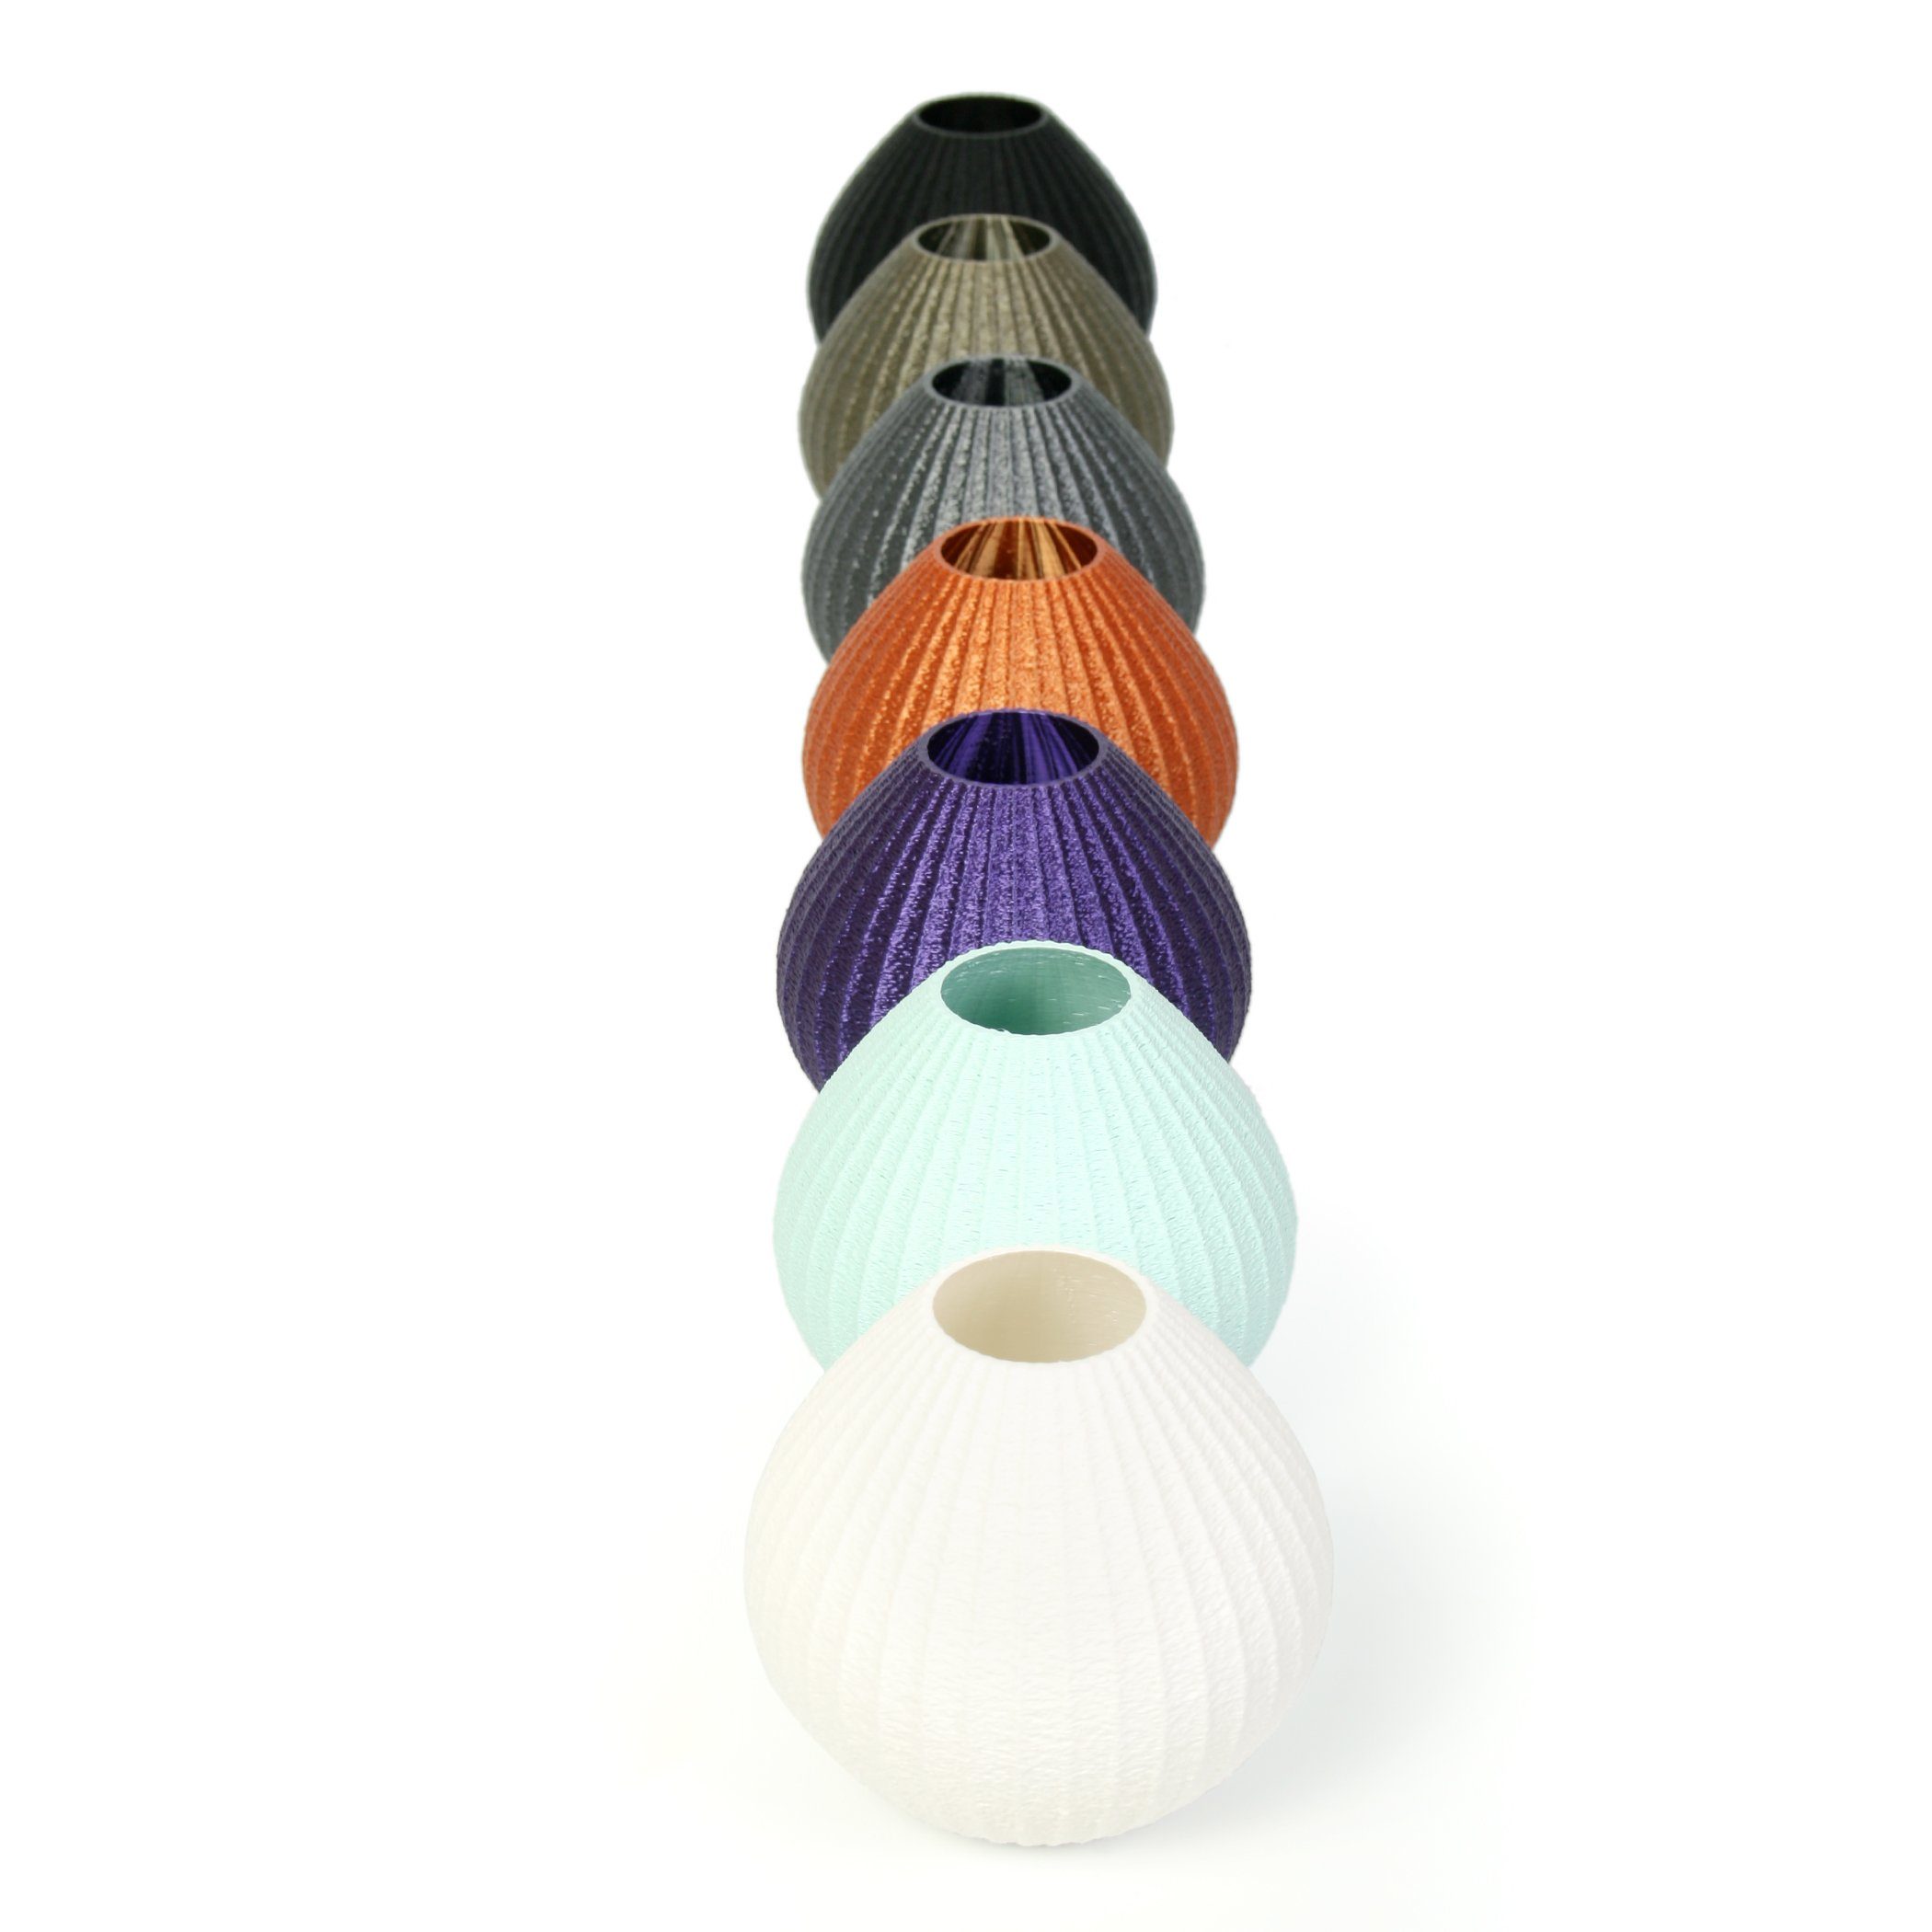 Vase aus Water – & Bio-Kunststoff, Designer Green nachwachsenden Dekovase Kreative bruchsicher Dekorative wasserdicht aus Blumenvase Feder Rohstoffen;